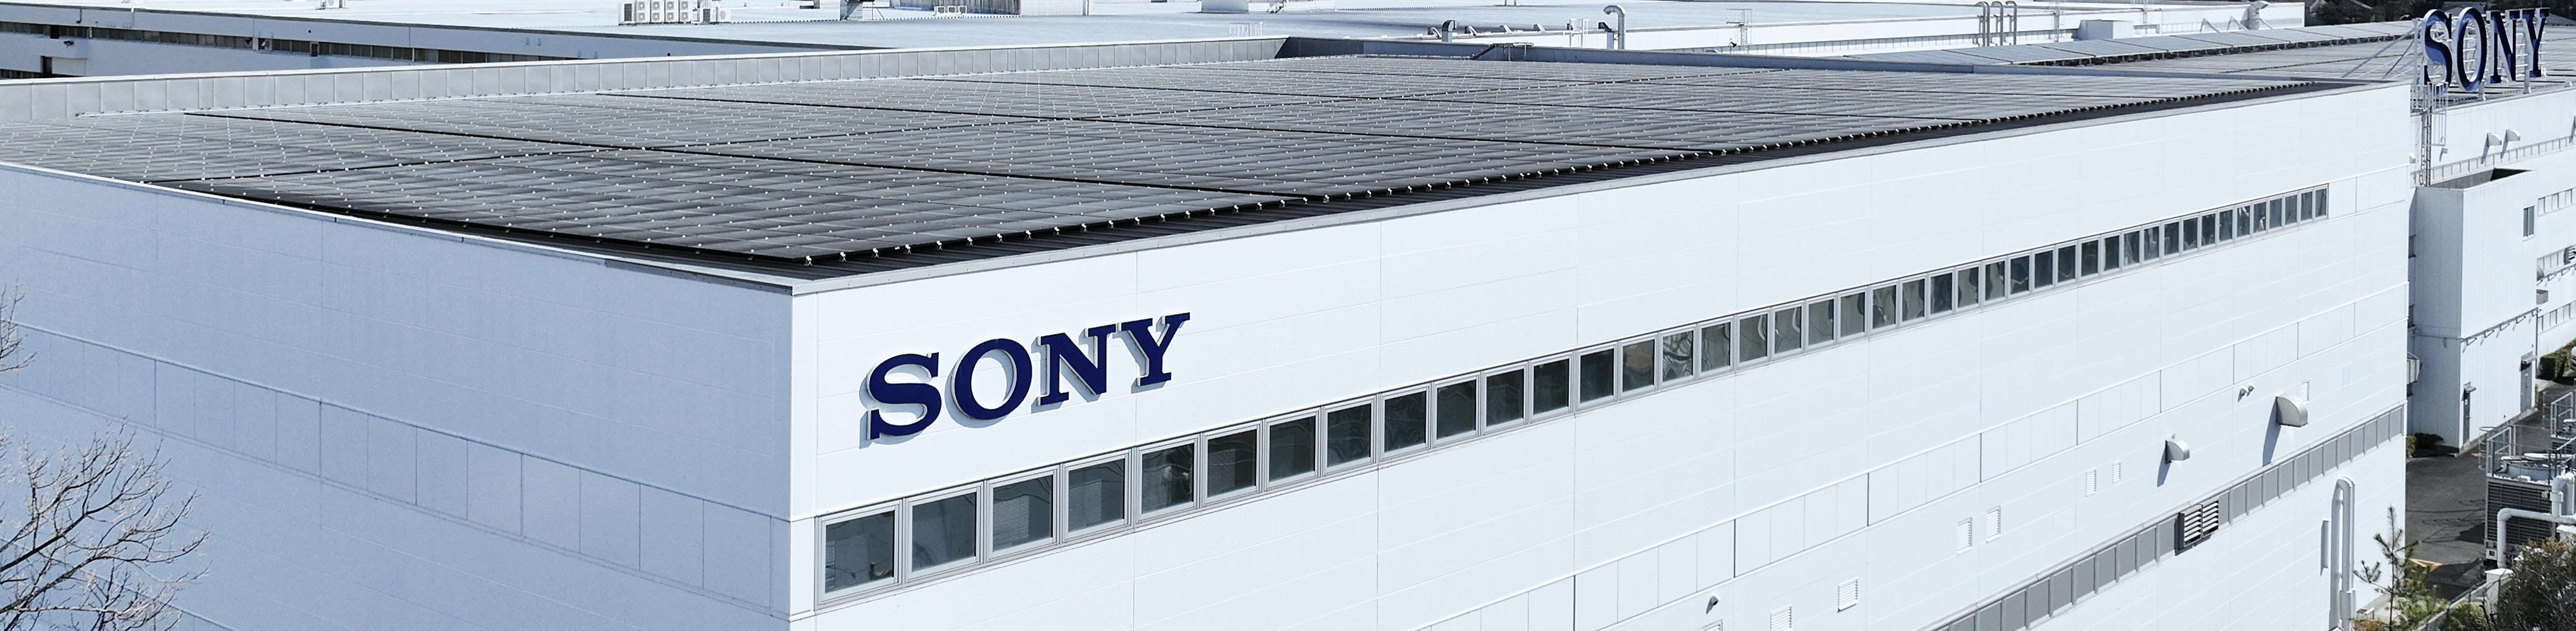 صورة فوتوغرافية تُظهر سطح مصنع مع لوح شمسي وشعار "سوني"